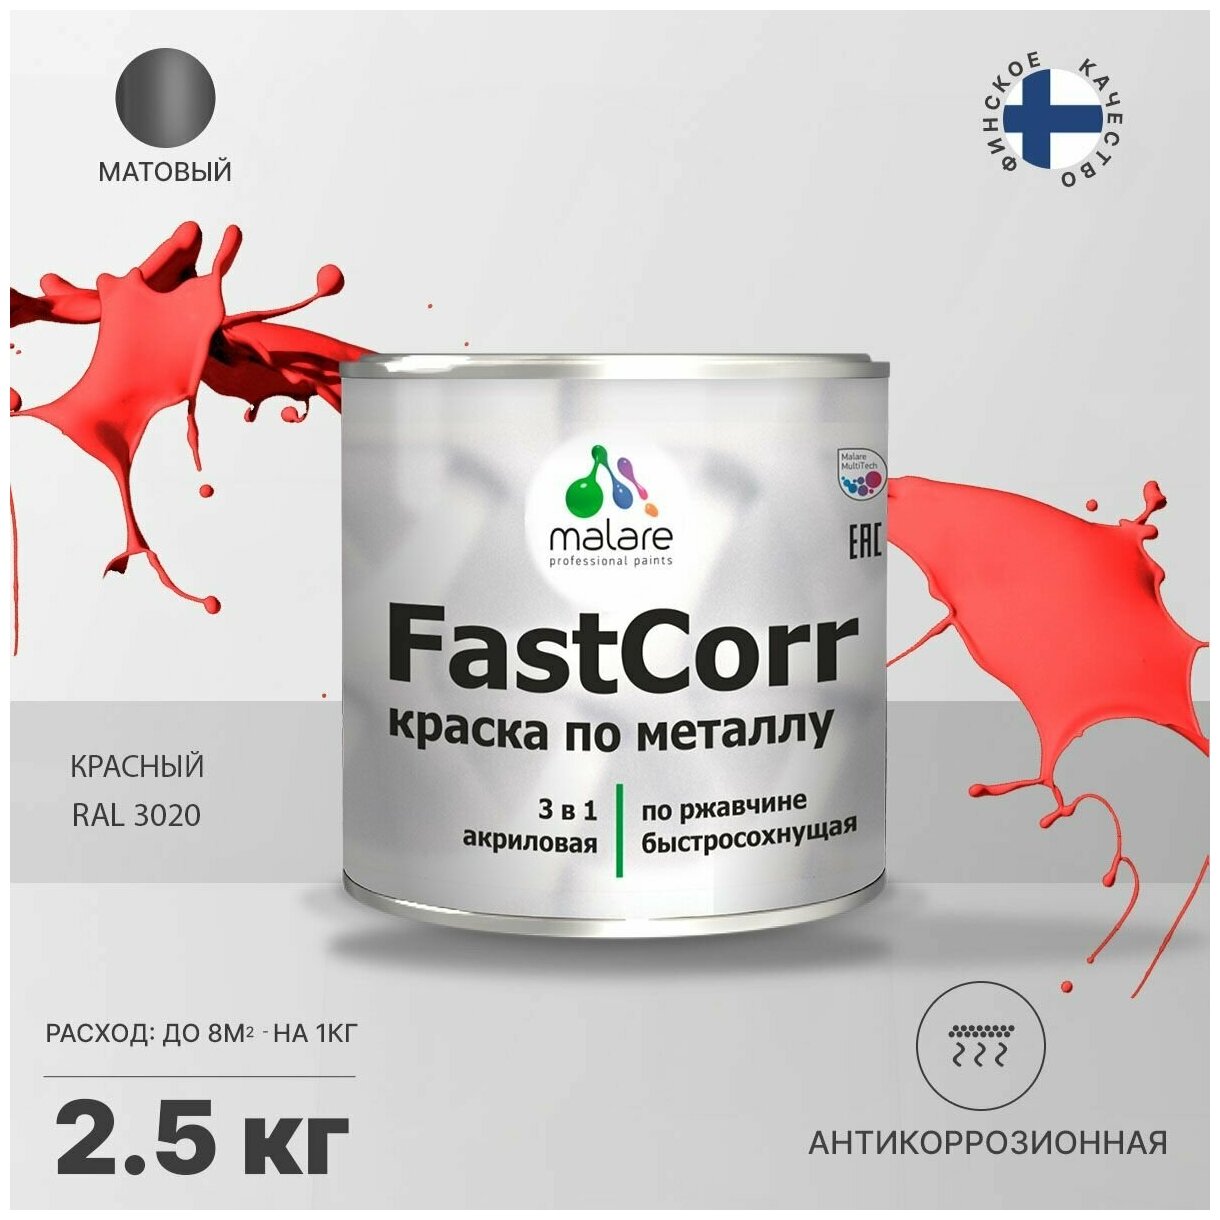 Краска по металлу Malare FastCorr по ржавчине, антикоррозионная, быстросохнущая, матовая, RAL 3020, красный, 2,5 кг. - фотография № 1